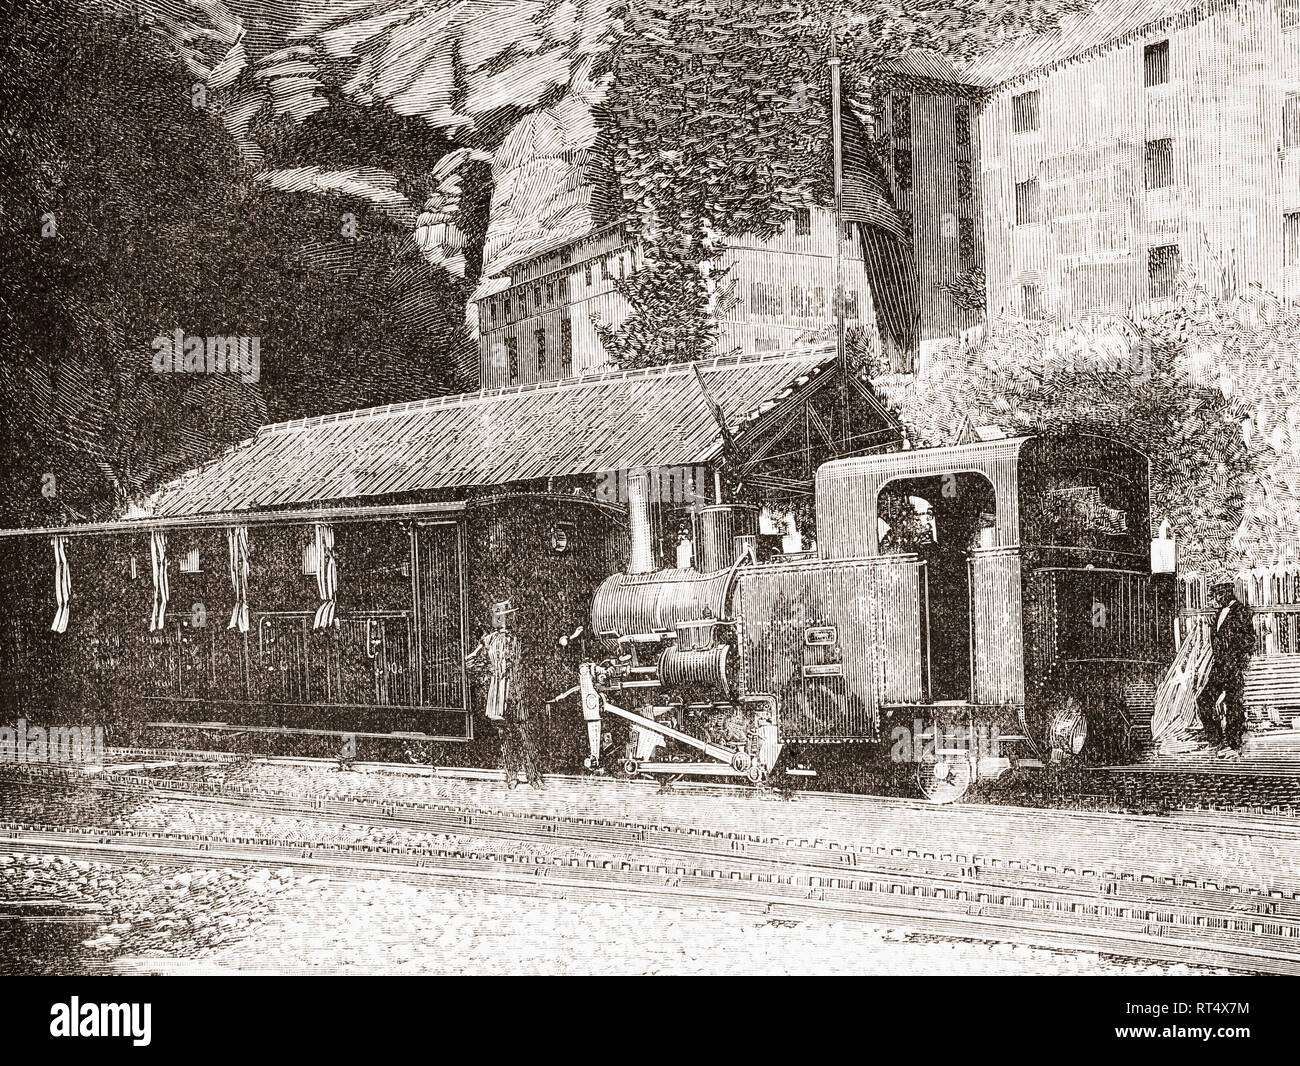 Die Montserrat Zahnradbahn, aka Zahnstangenlenkung Bahn, Zahnradbahn oder Zahnradbahn, Barcelona, Katalonien, Spanien, hier im 19. Jahrhundert. Von La Ilustracion Artistica, veröffentlicht 1887. Stockfoto